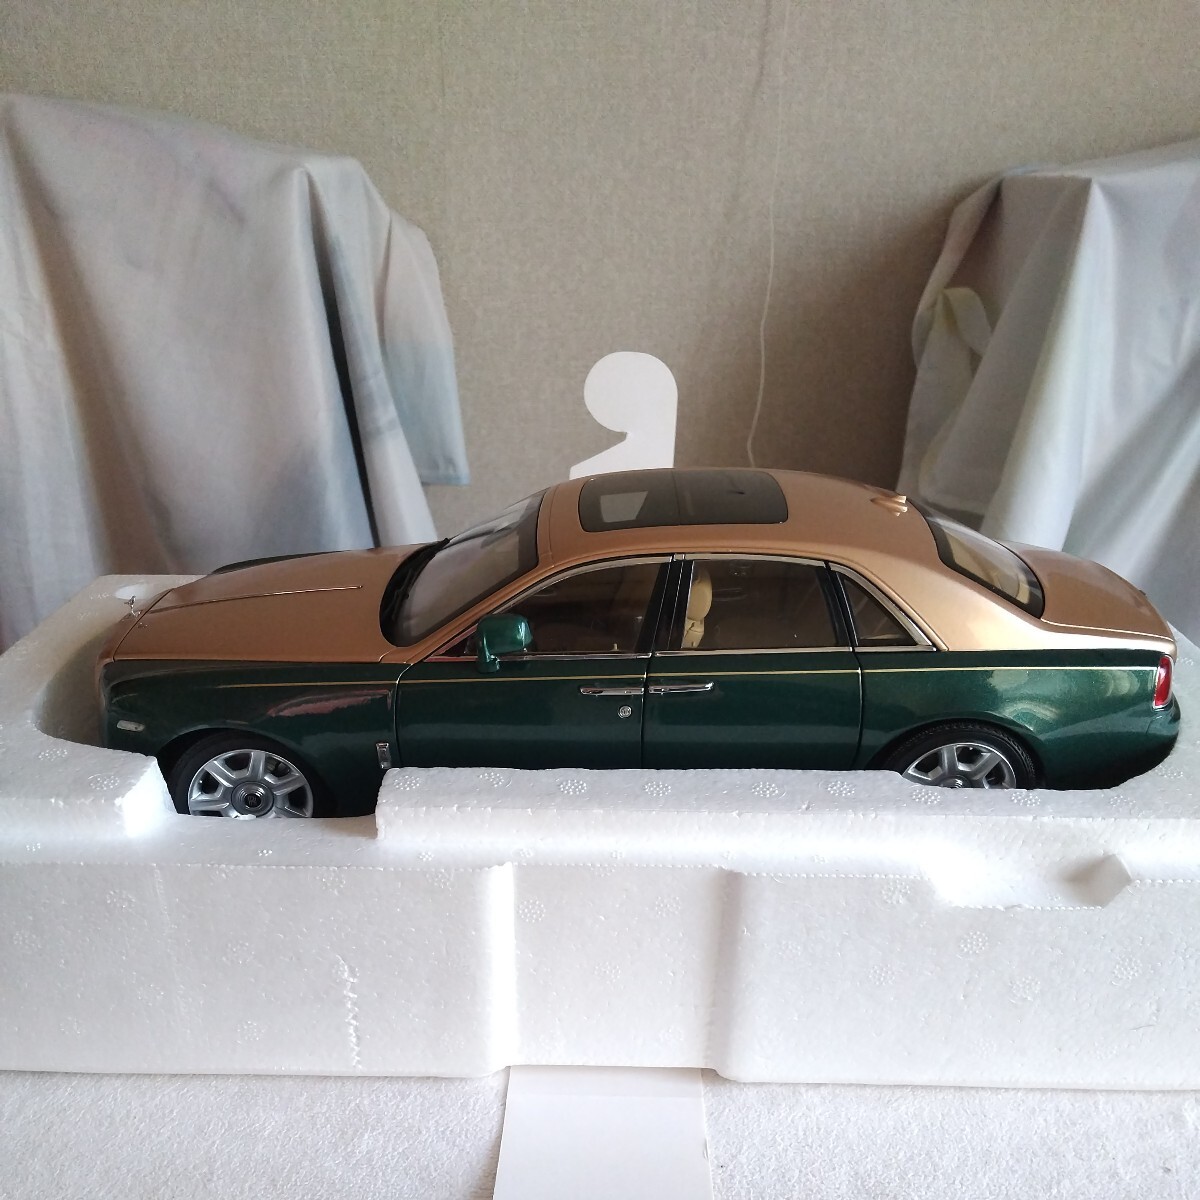 1/18 Kyosho Rolls Royce ghost green silver 